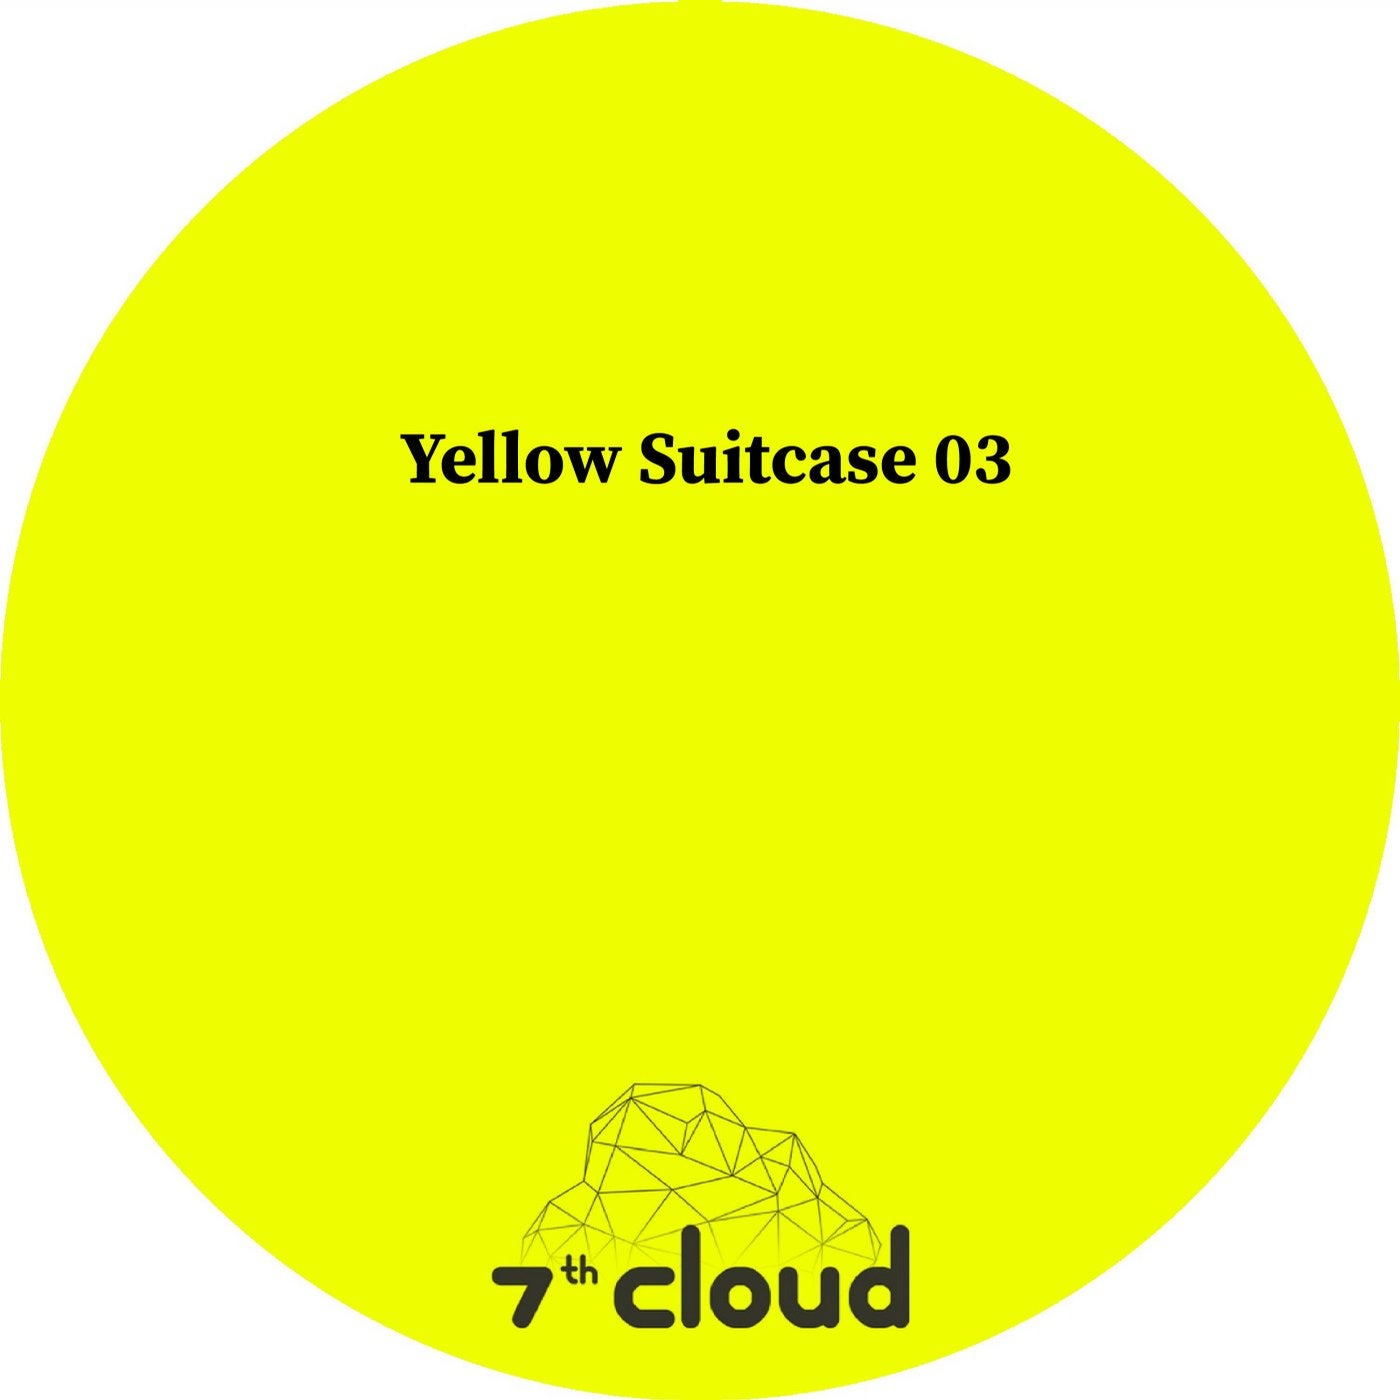 Yellow Suitcase 03